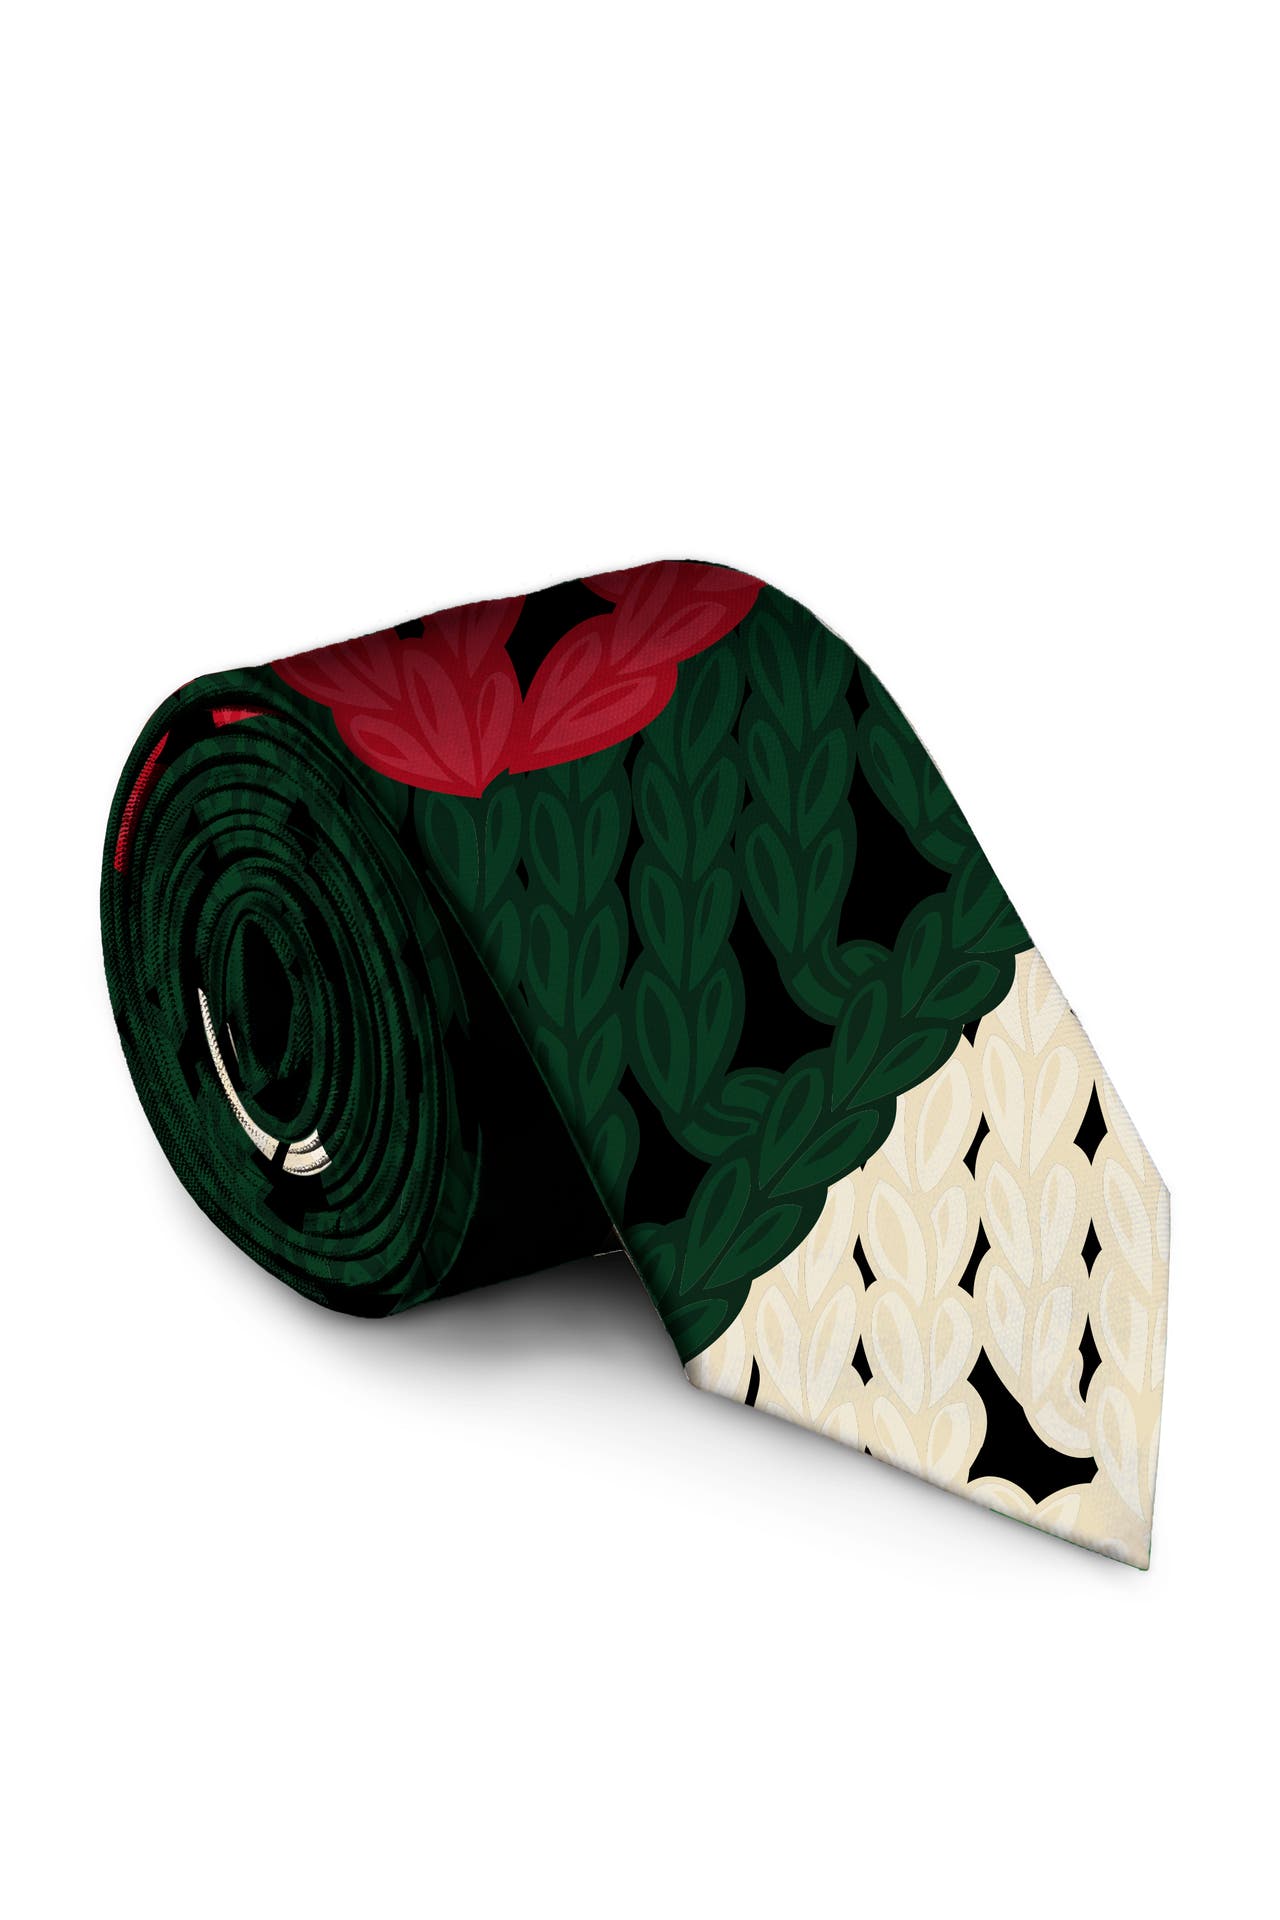 The Dapper Doily Christmas knit print tie